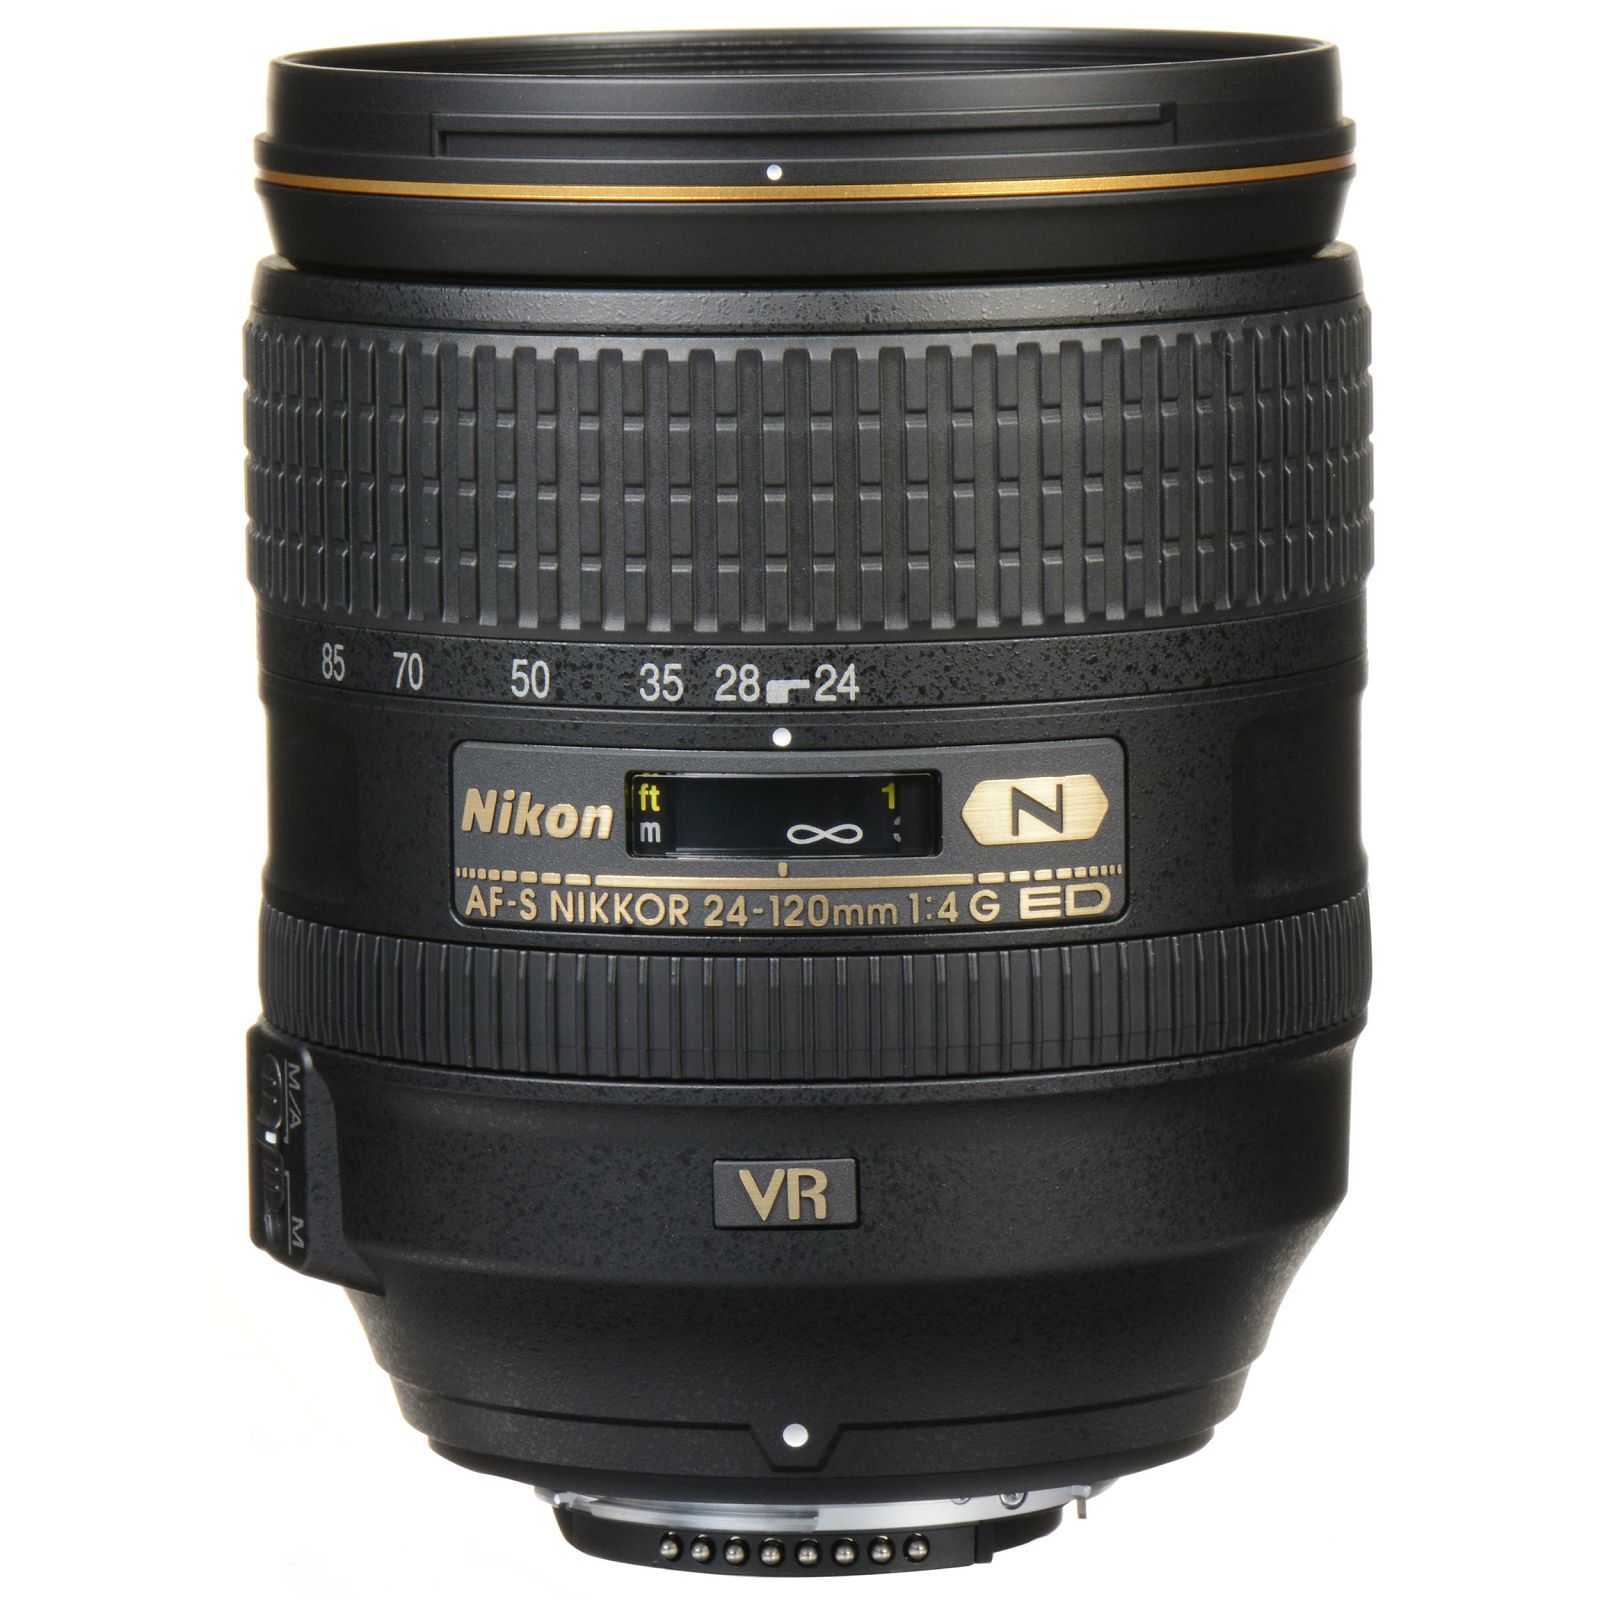 Nikon D850 + AF-S 24-120 f/4G ED VR KIT 4K 9fps 45.7MPpx FX Full Frame DSLR Digitalni fotoaparat s Nikkor 24-120mm objektivom (VBA520K001)